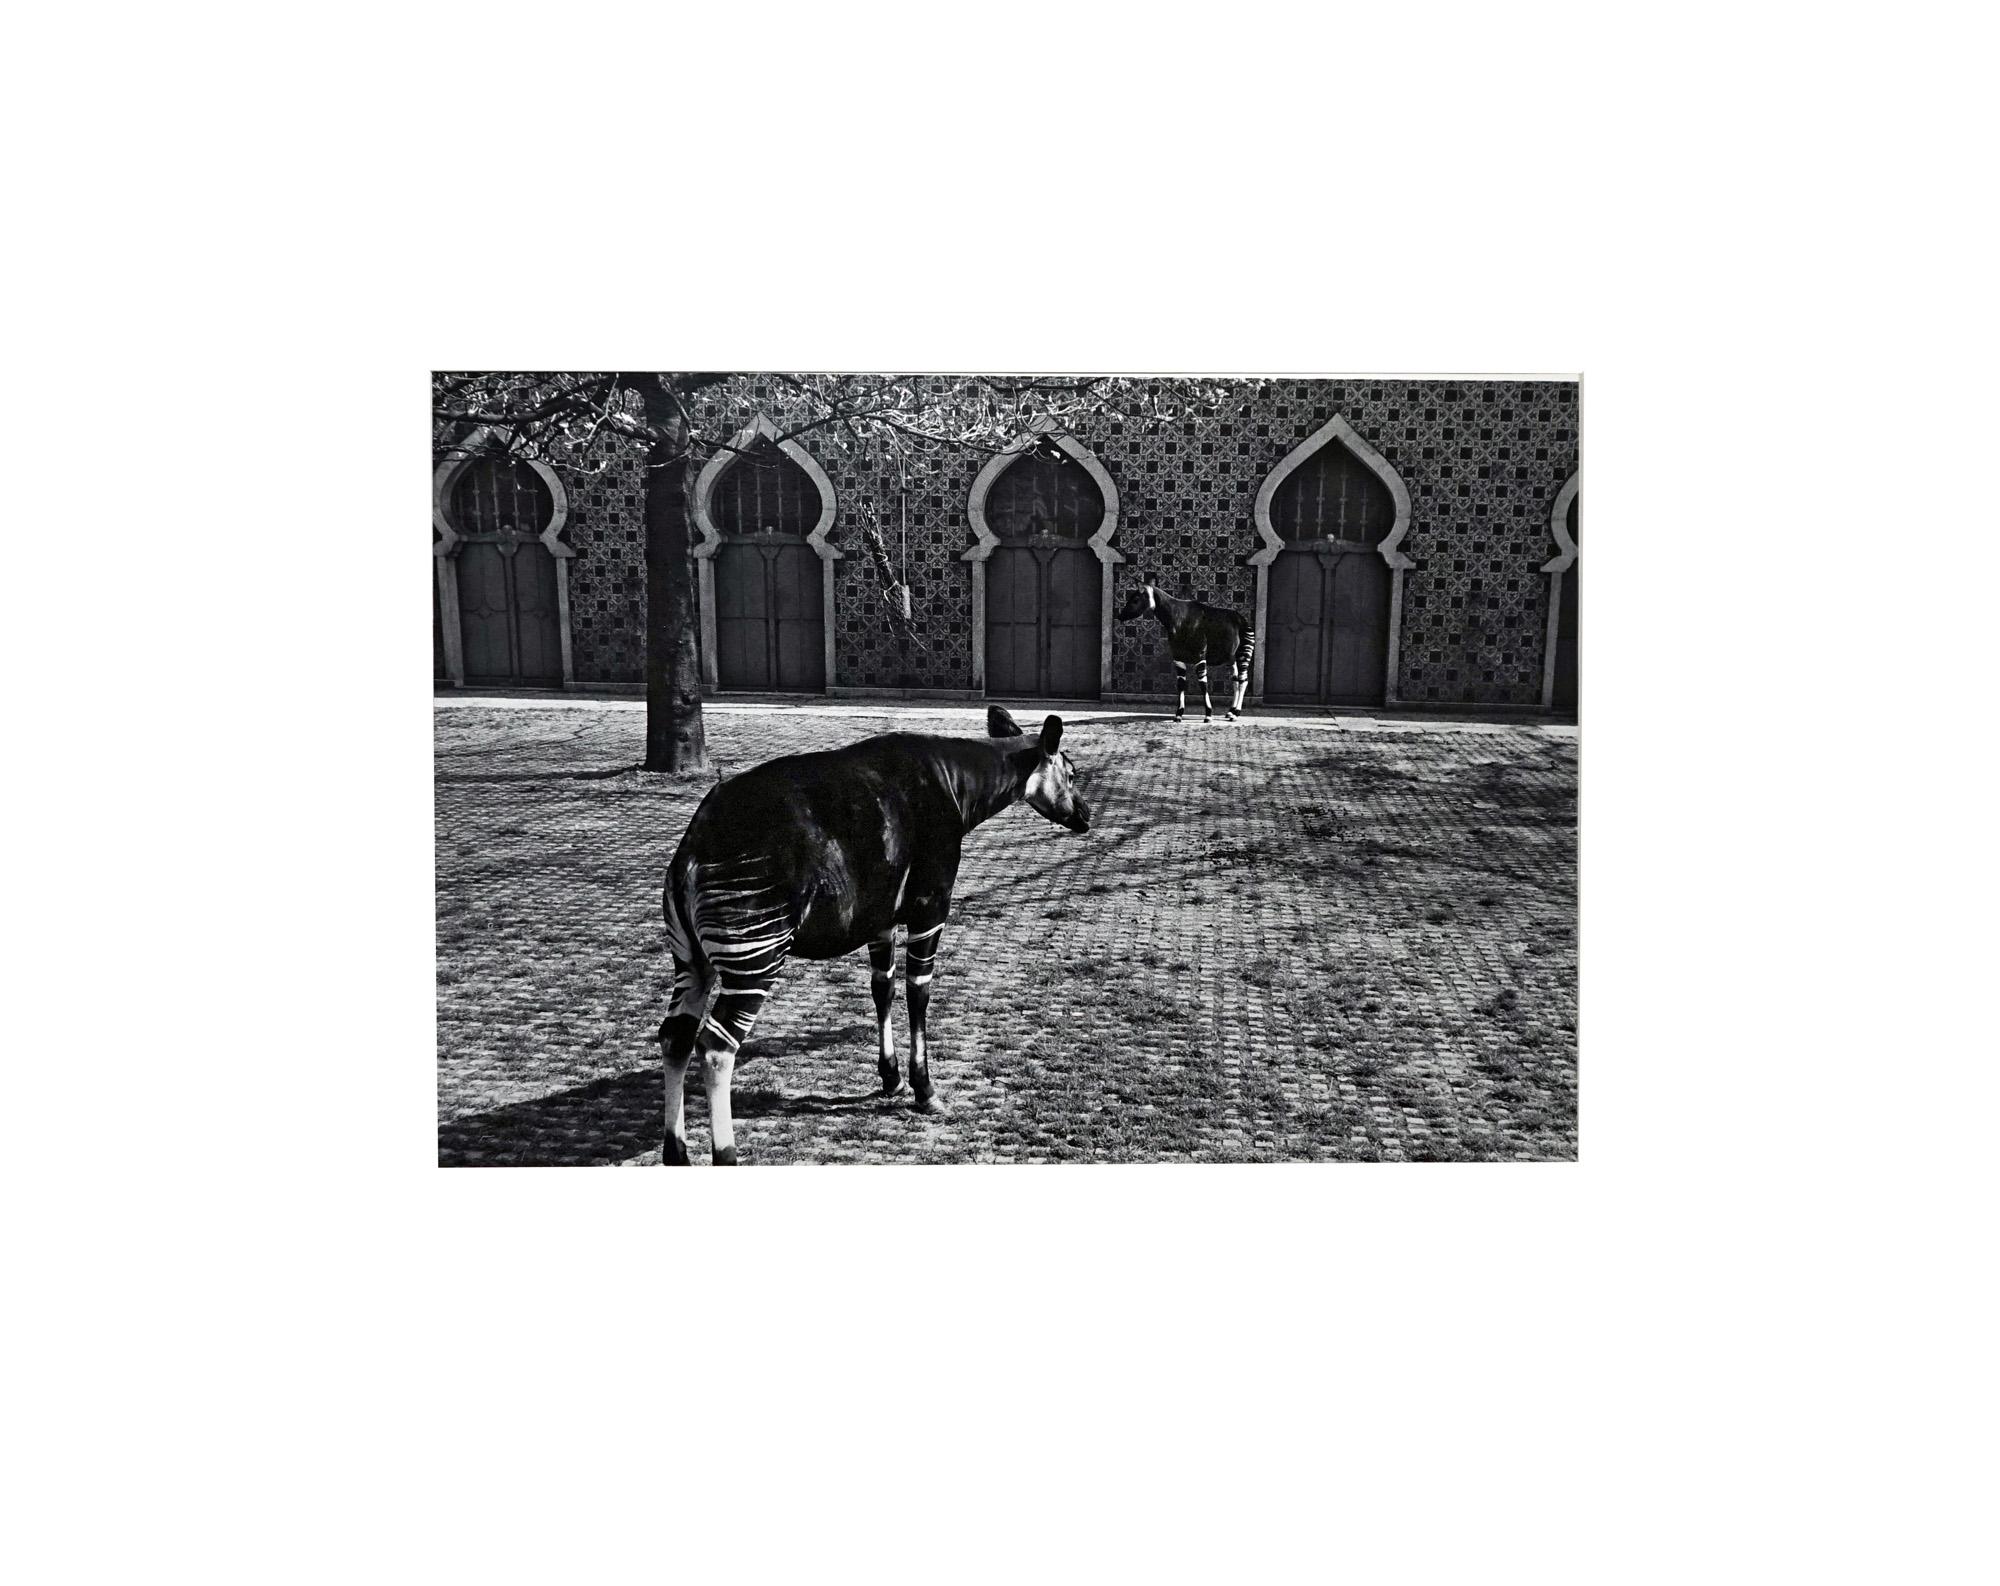 Parc Zoologique - Coffret Prestige # 3 - 1980, Minimalist Black and White Photog - Photograph de Jörg Krichbaum